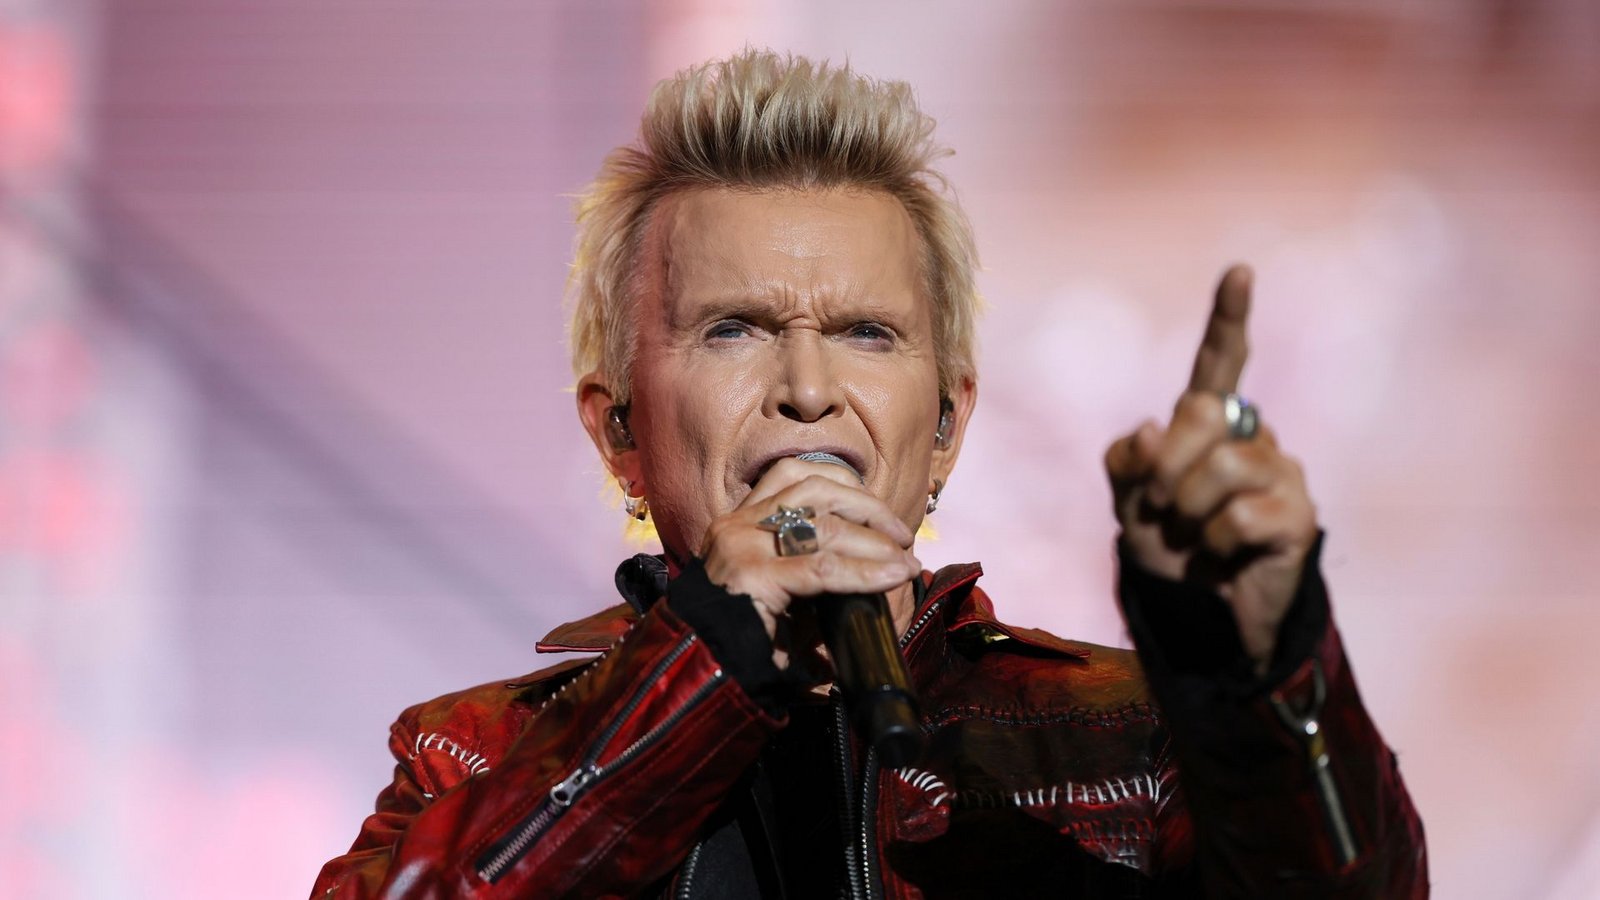 Der britische Sänger Billy Idol startete in den USA richtig durch.Foto: Ginnette Riquelme/AP/dpa